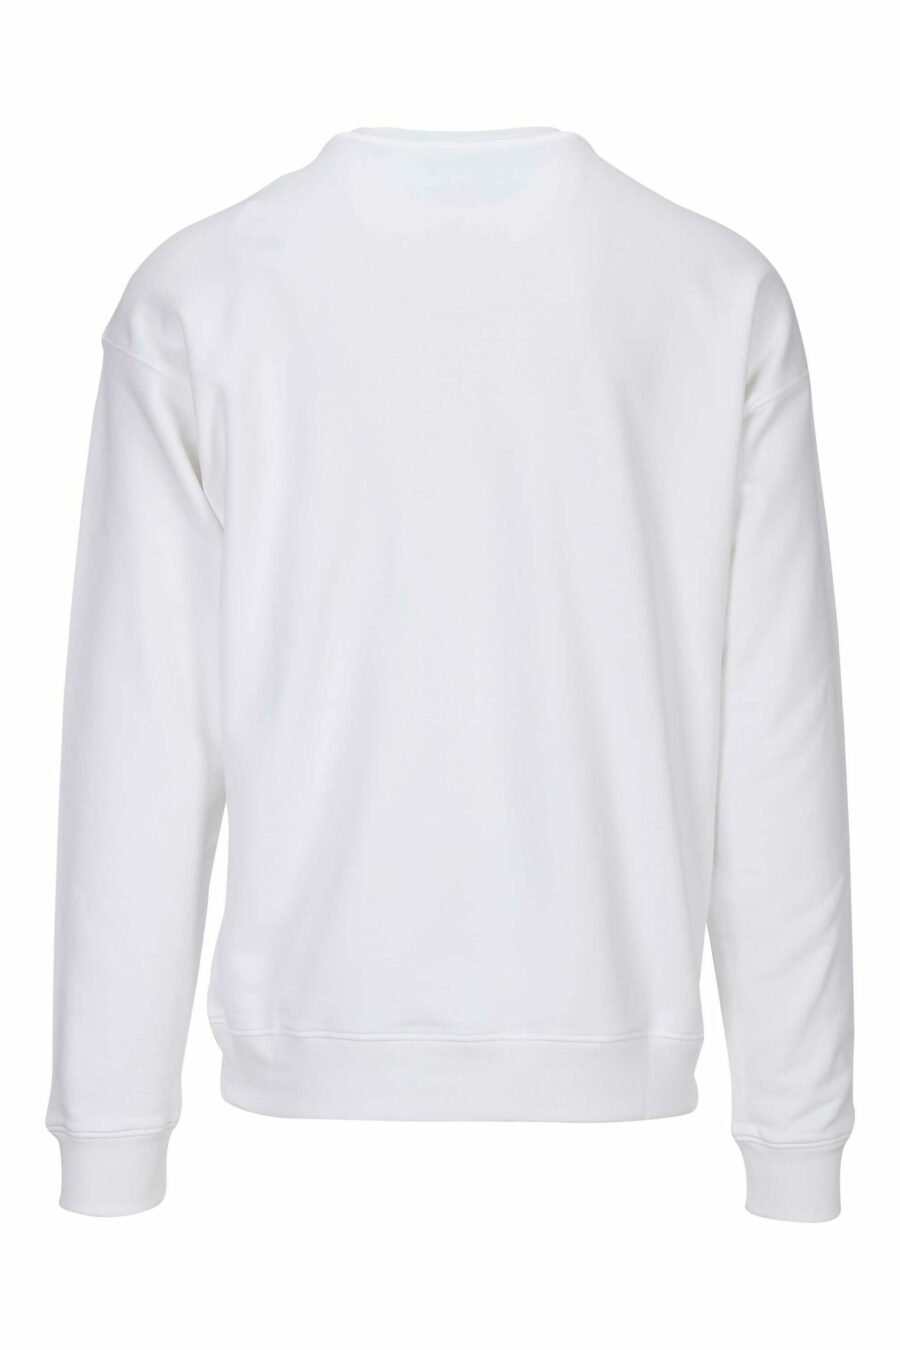 Weißes Sweatshirt mit einfarbig gepunktetem Bären-Maxilogo - 667113458137 1 skaliert